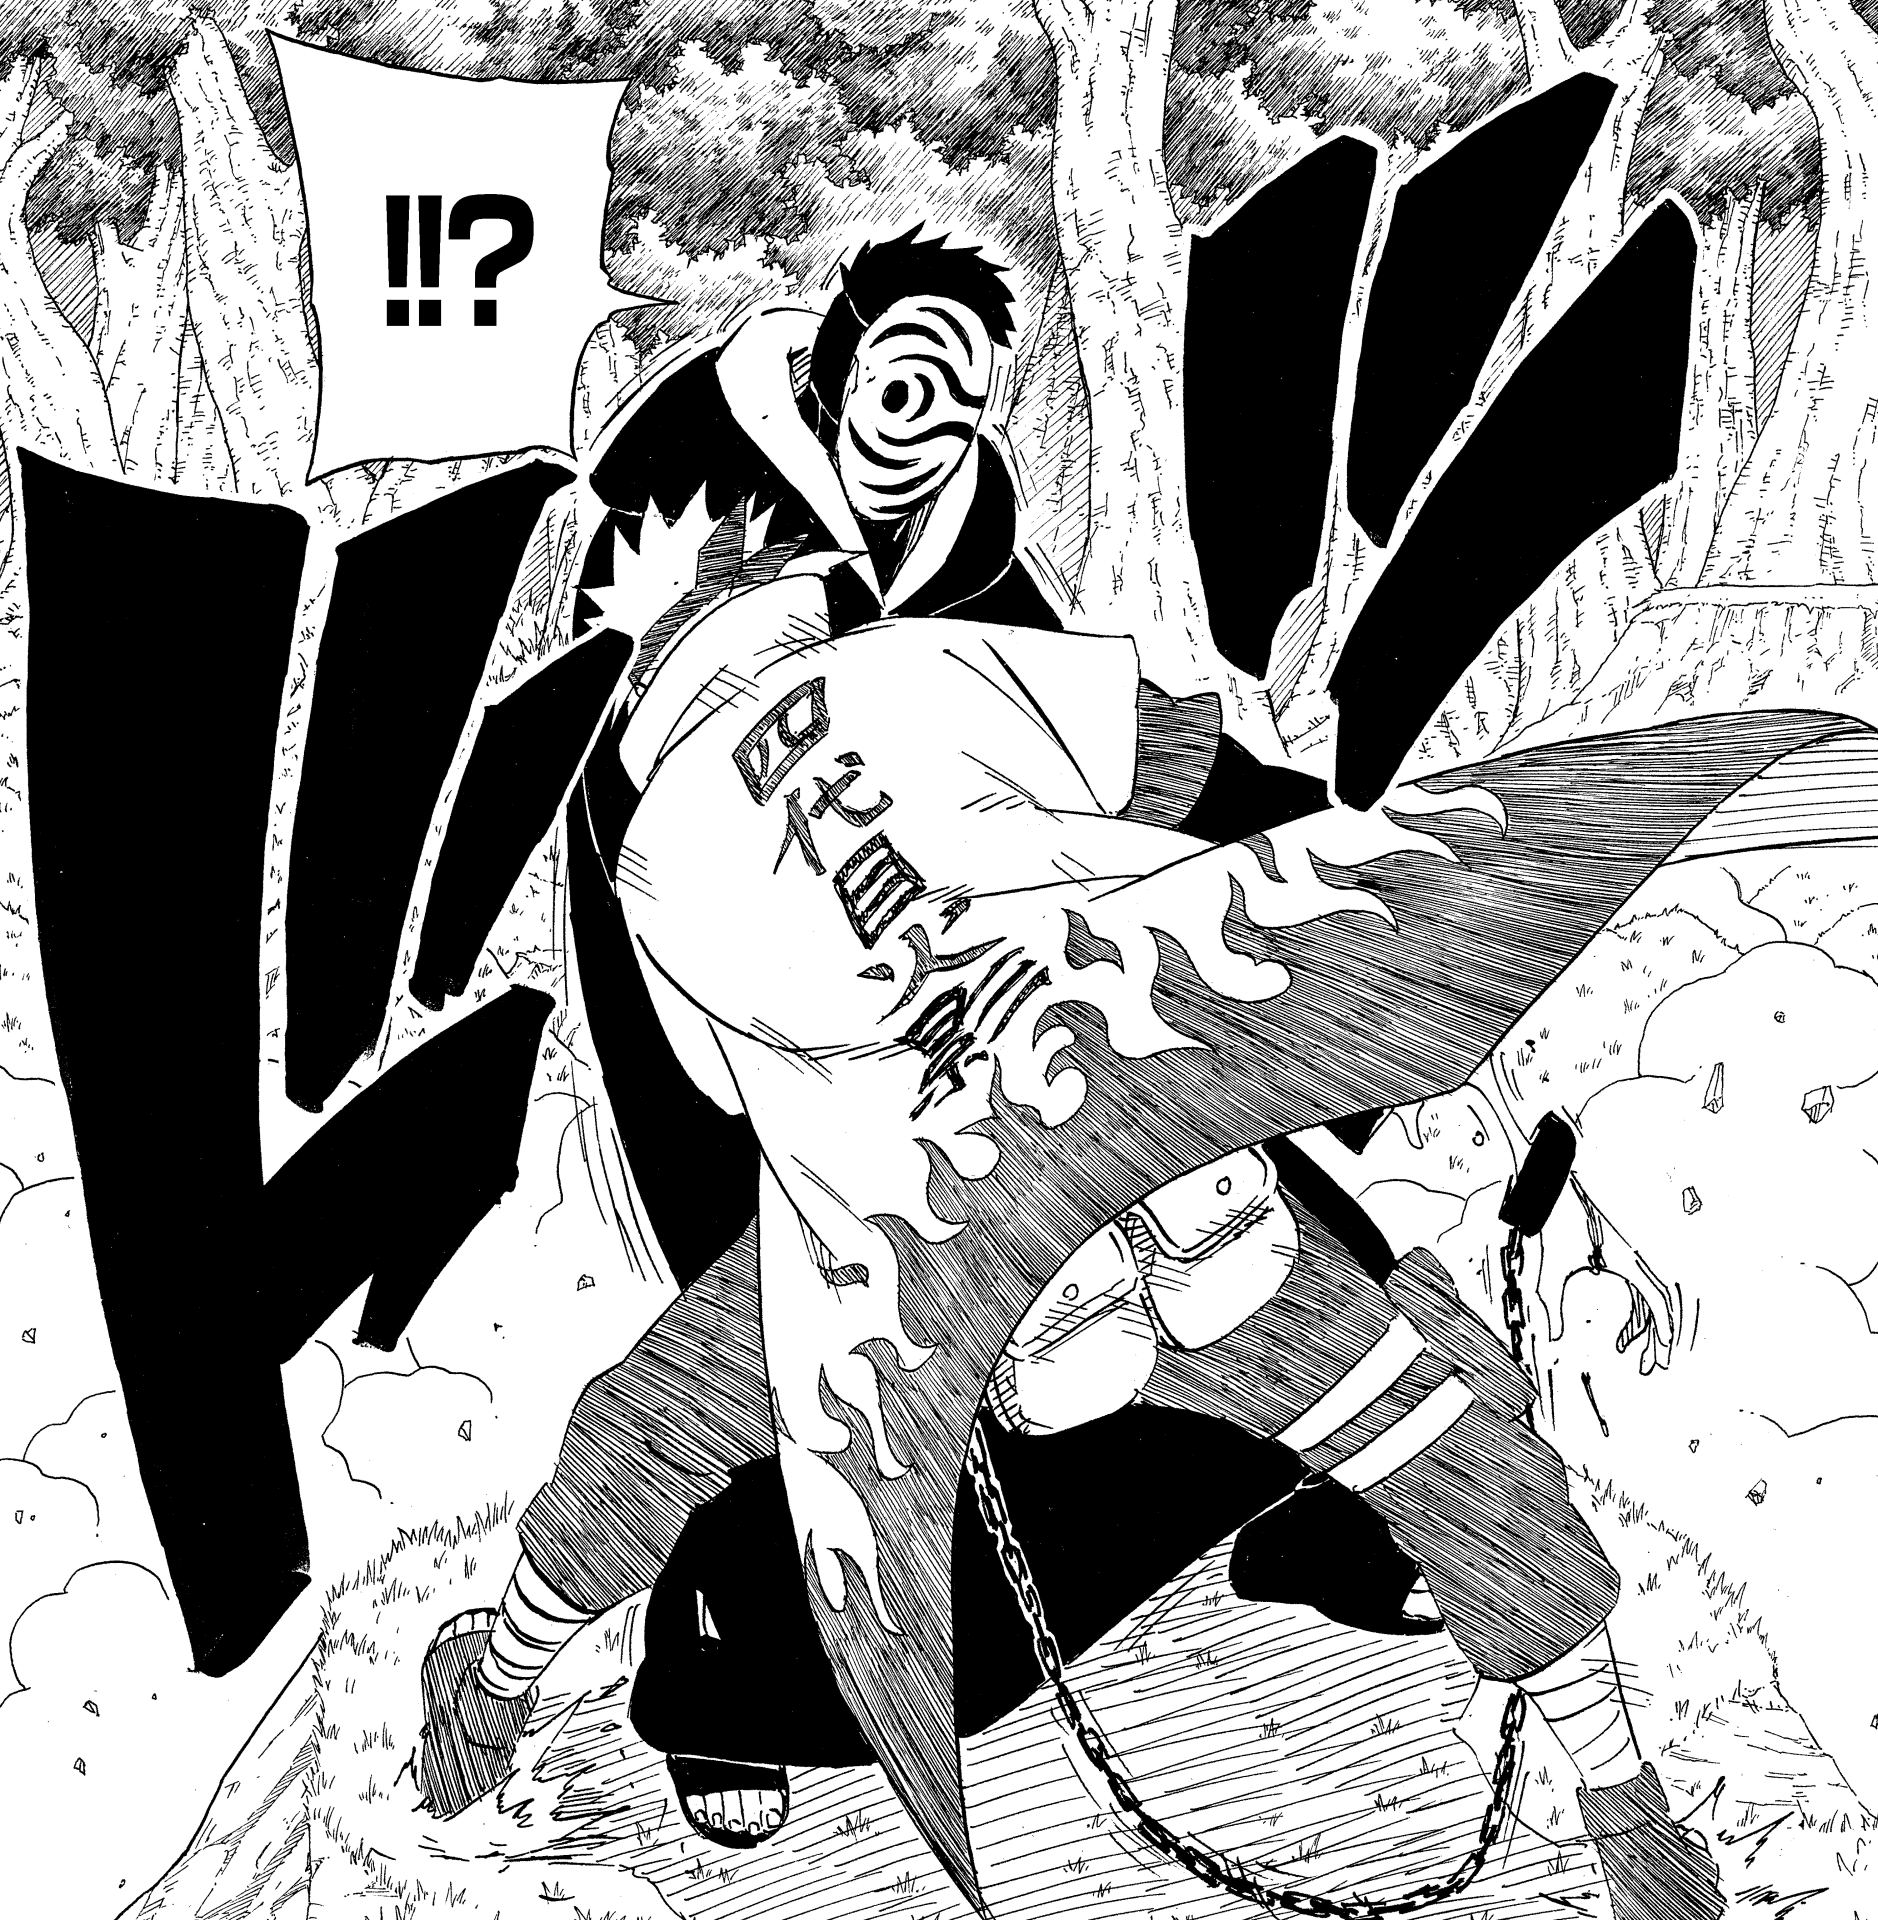 Mr Escorpion - ¿Sabían que cuando Minato fue elegido como Cuarto Hokage  hubo descontento en la aldea? Dentro de Konoha Minato era respetado y  admirado como ninja, sin embargo, a ojos de